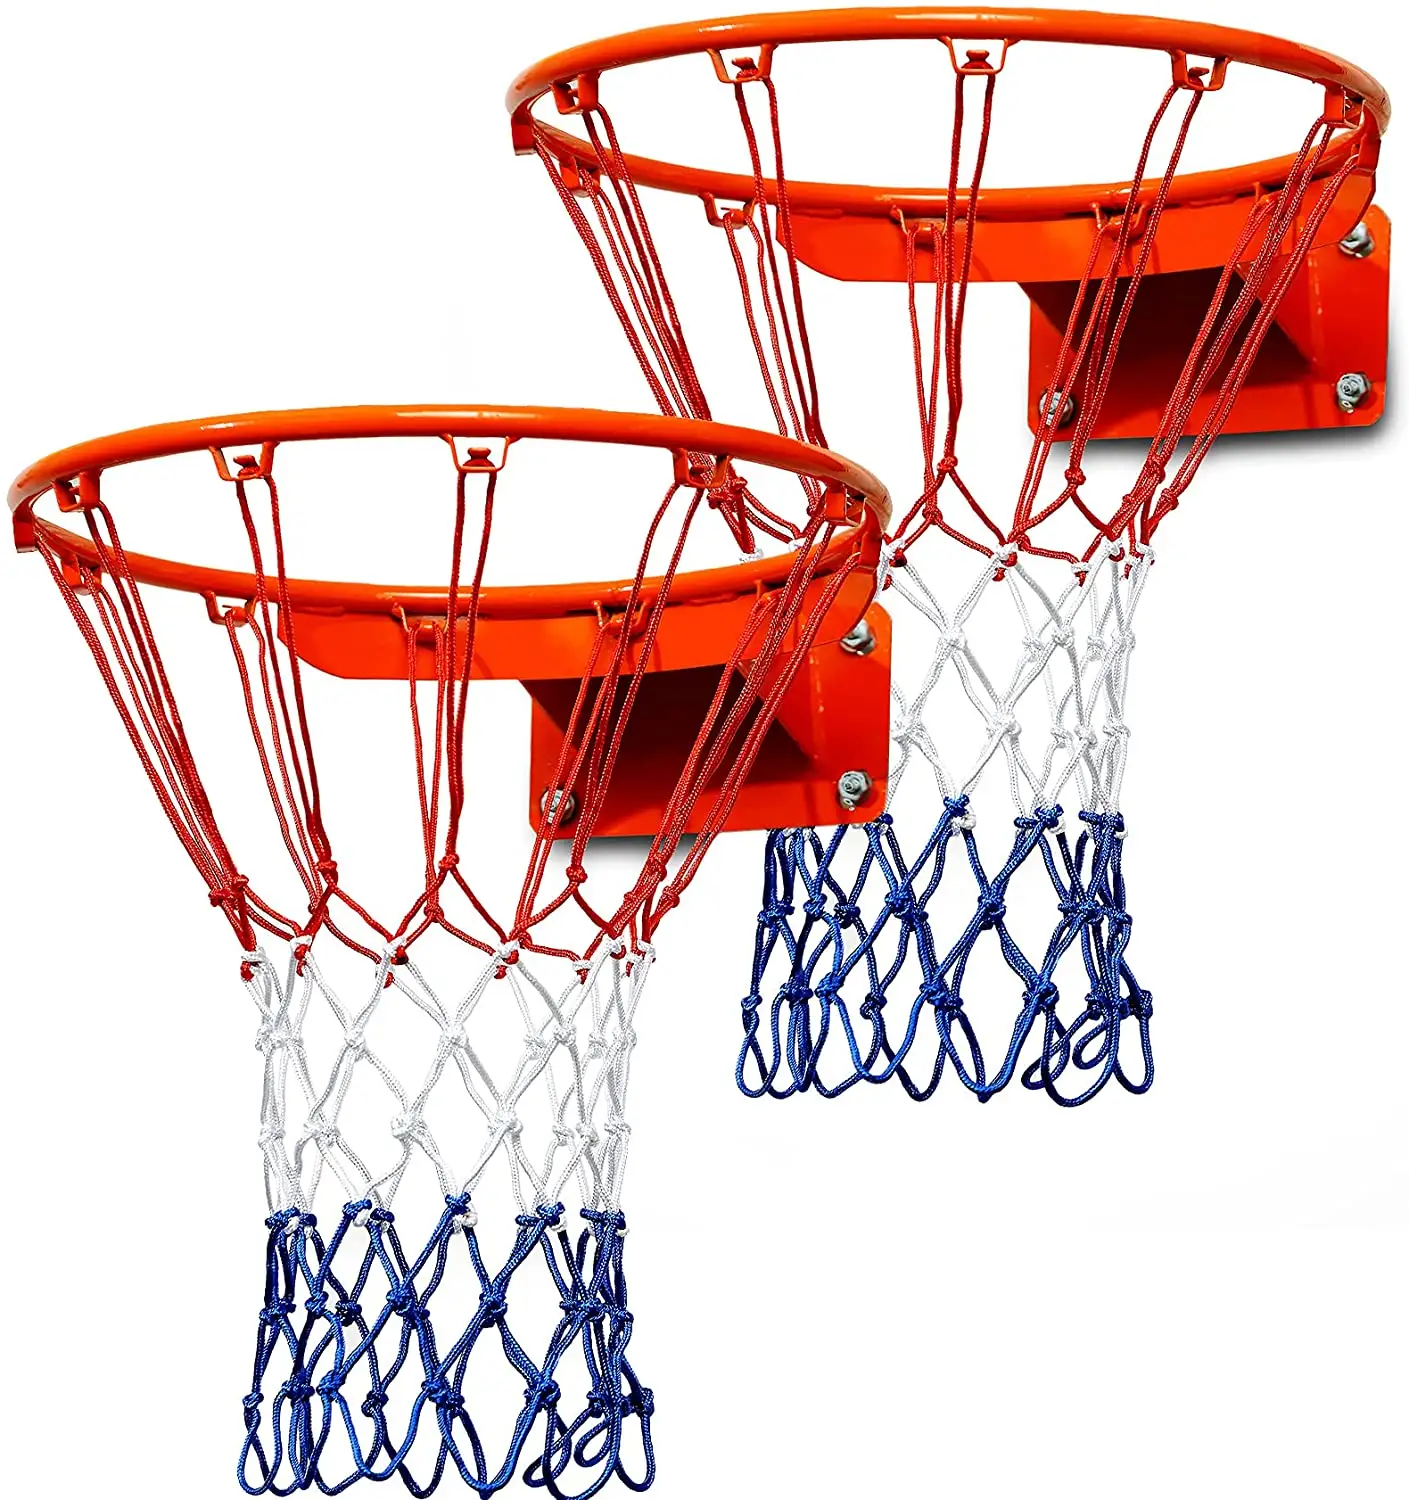 Im Freien kühnes Basketball netz rot, weiß und blau Ball korbnetz nach Hause Basketball korbnetz